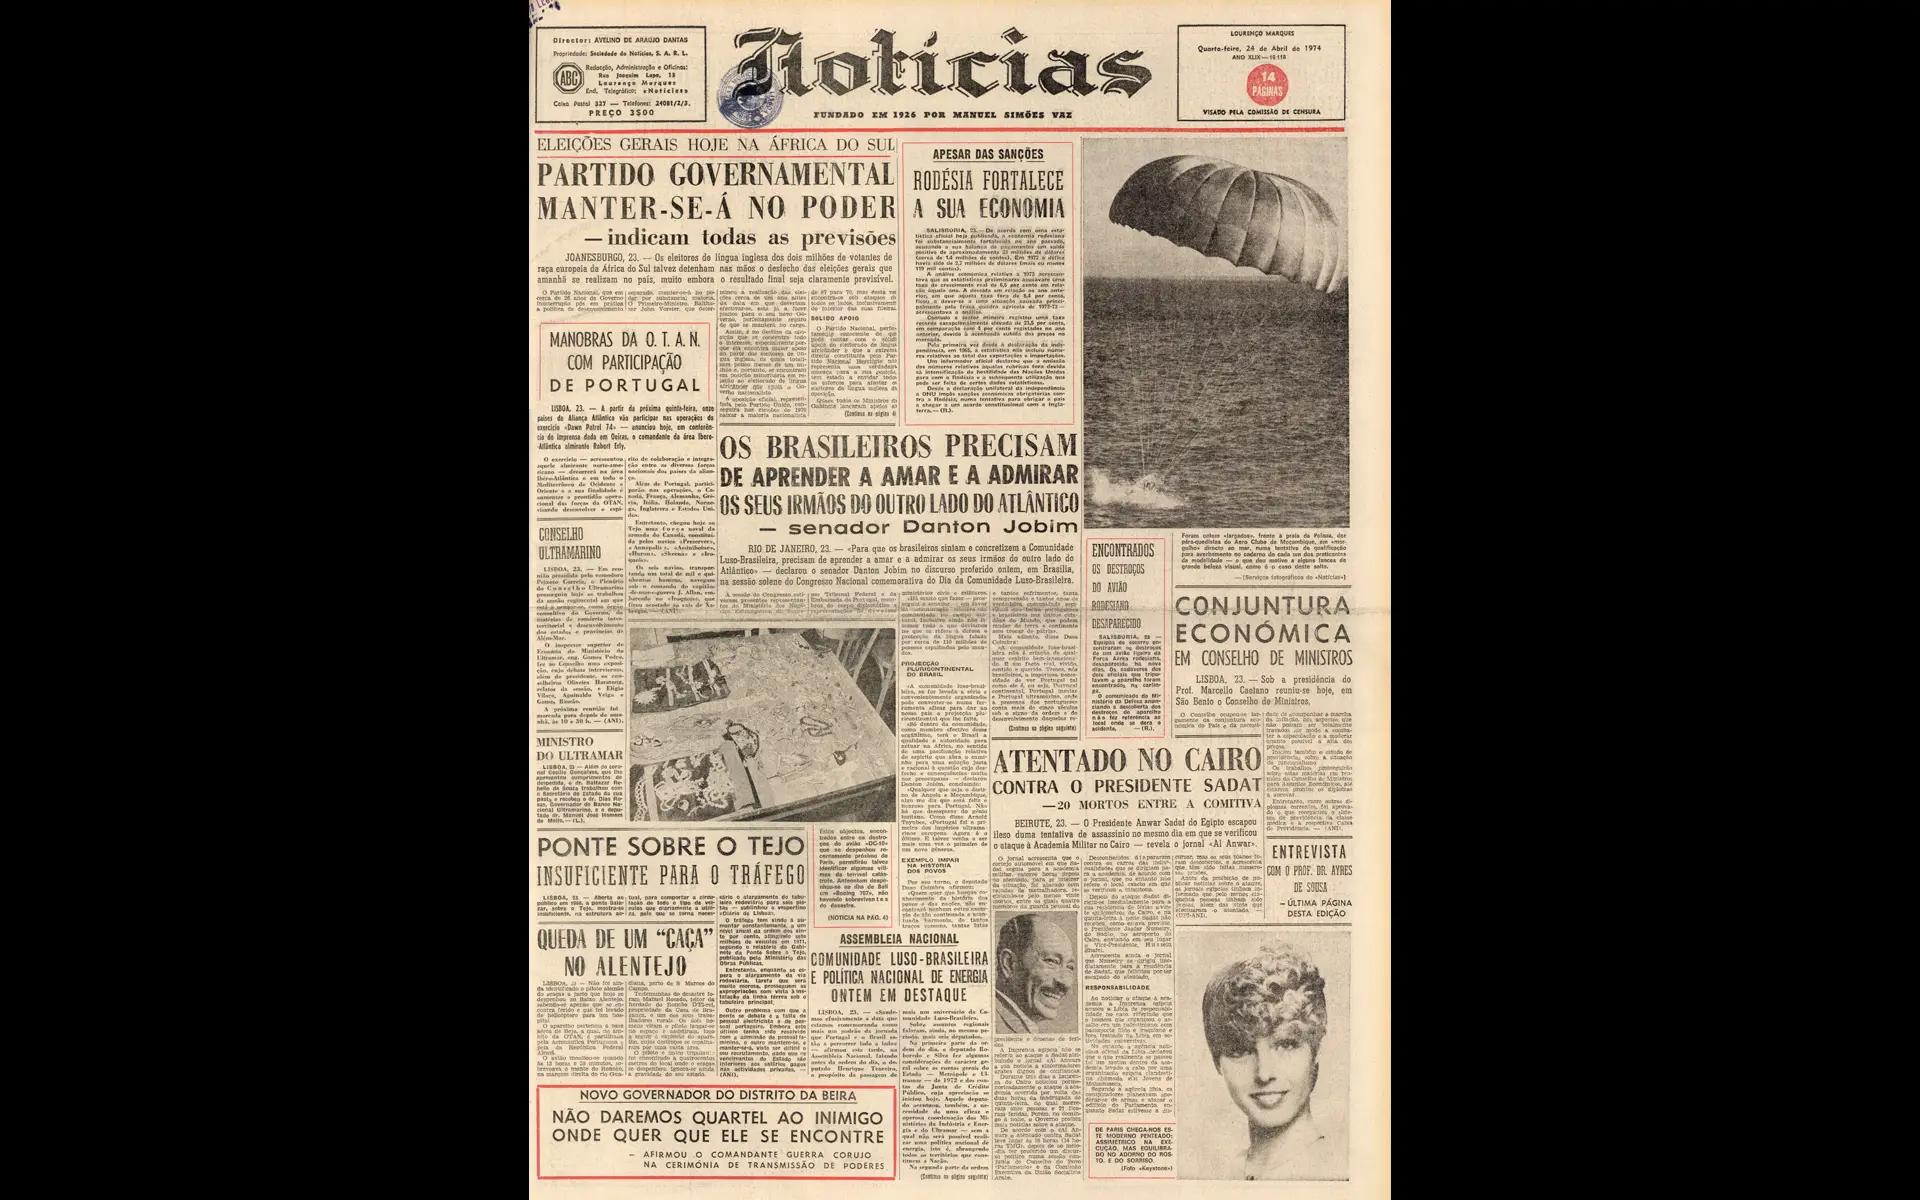 Fundado em 1926, o Notícias de Lourenço Marques de 24 de abril faz manchete com as eleições na vizinha África do Sul e destaca o excesso de trânsito na ponte sobre o Tejo em Lisboa. Também noticia um atentado falhado contra o Presidente do Egito, Anwar Sadat, que viria a ser assassinado a 6 de outubro de 1981